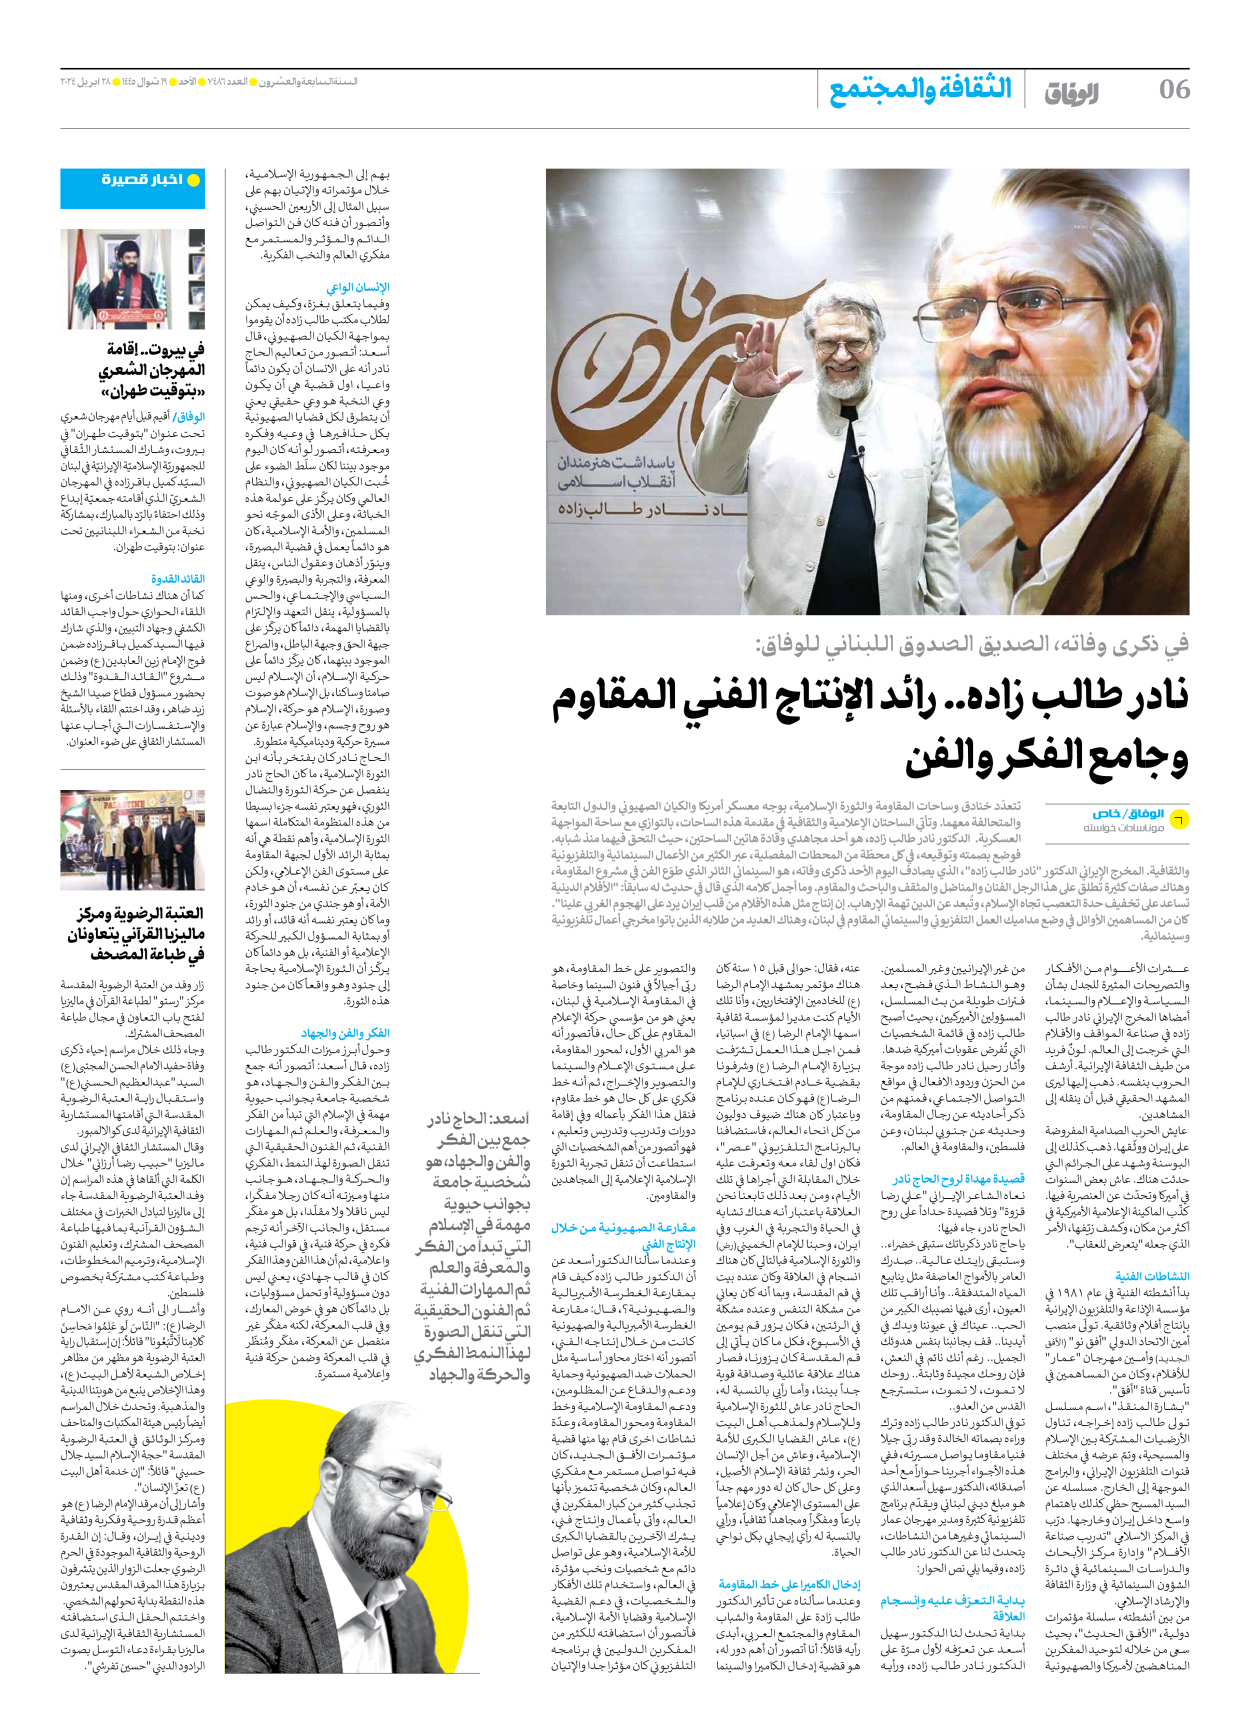 صحیفة ایران الدولیة الوفاق - العدد سبعة آلاف وأربعمائة وستة وثمانون - ٢٨ أبريل ٢٠٢٤ - الصفحة ٦